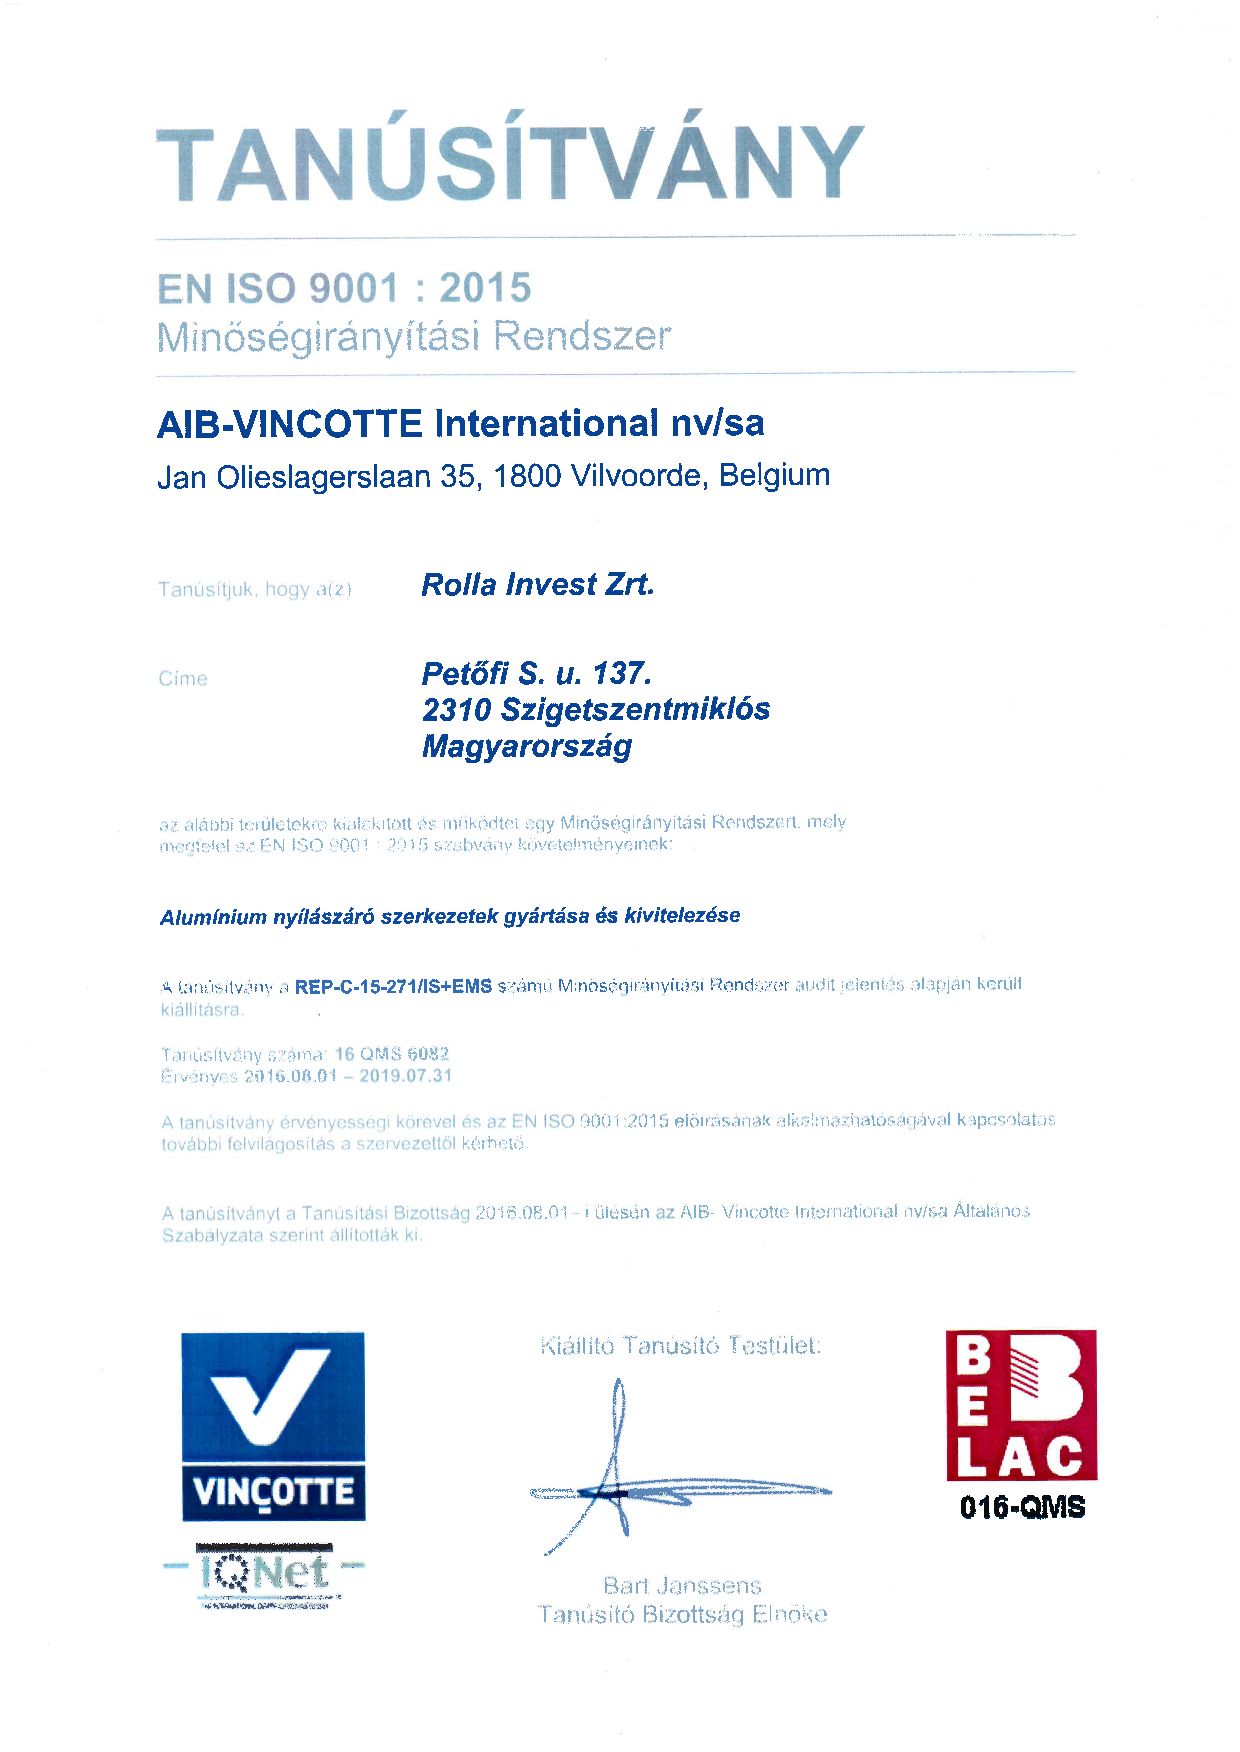 EN ISO 9001:2015 (0. oldal)